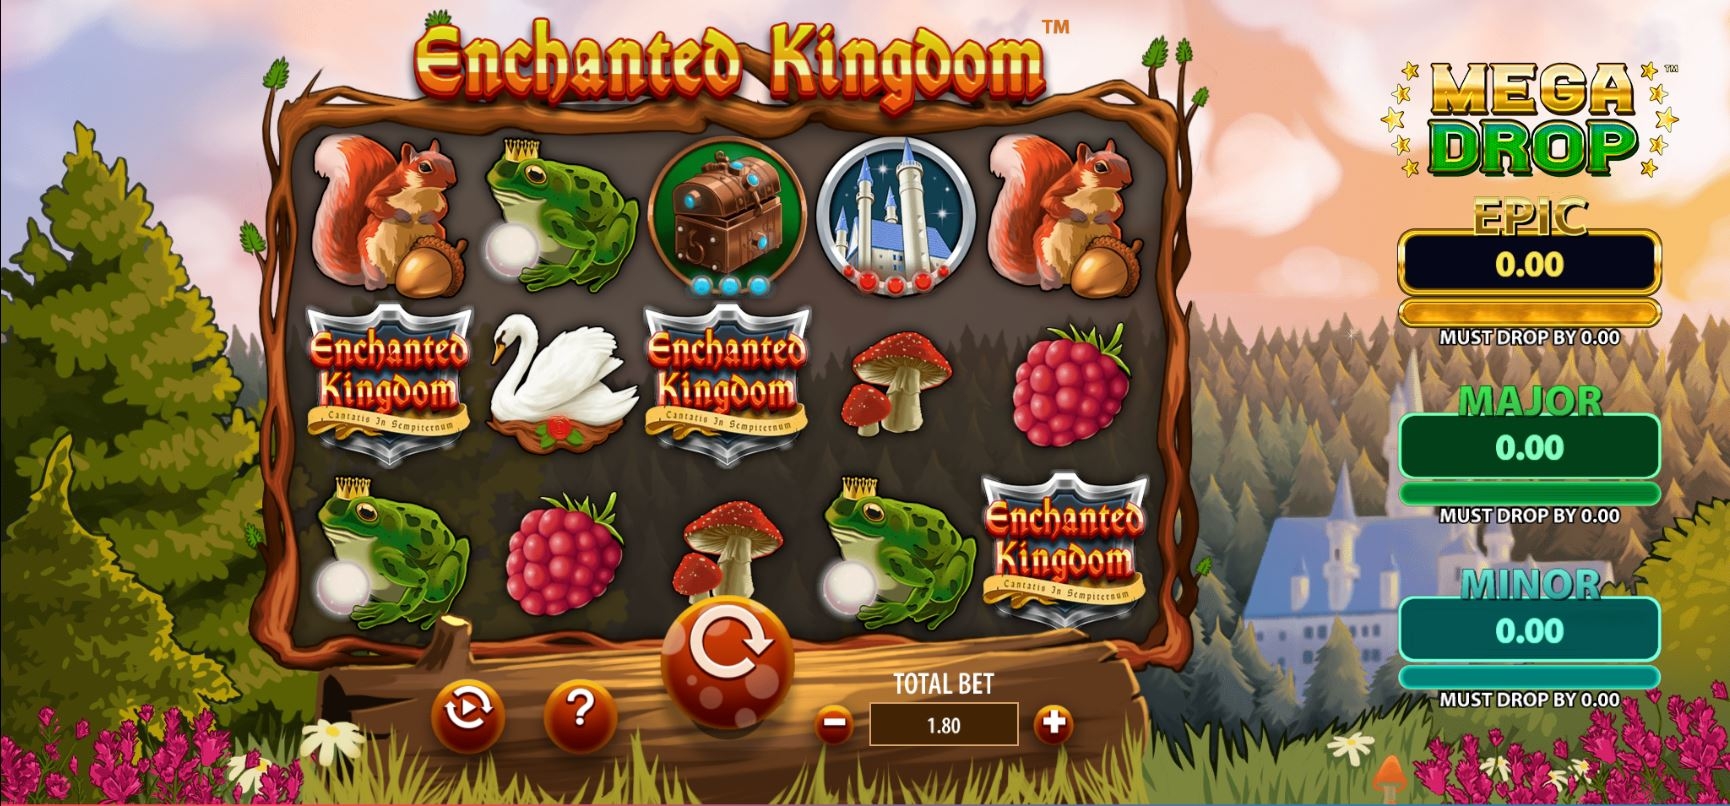 Enchanted Kingdom slot machine